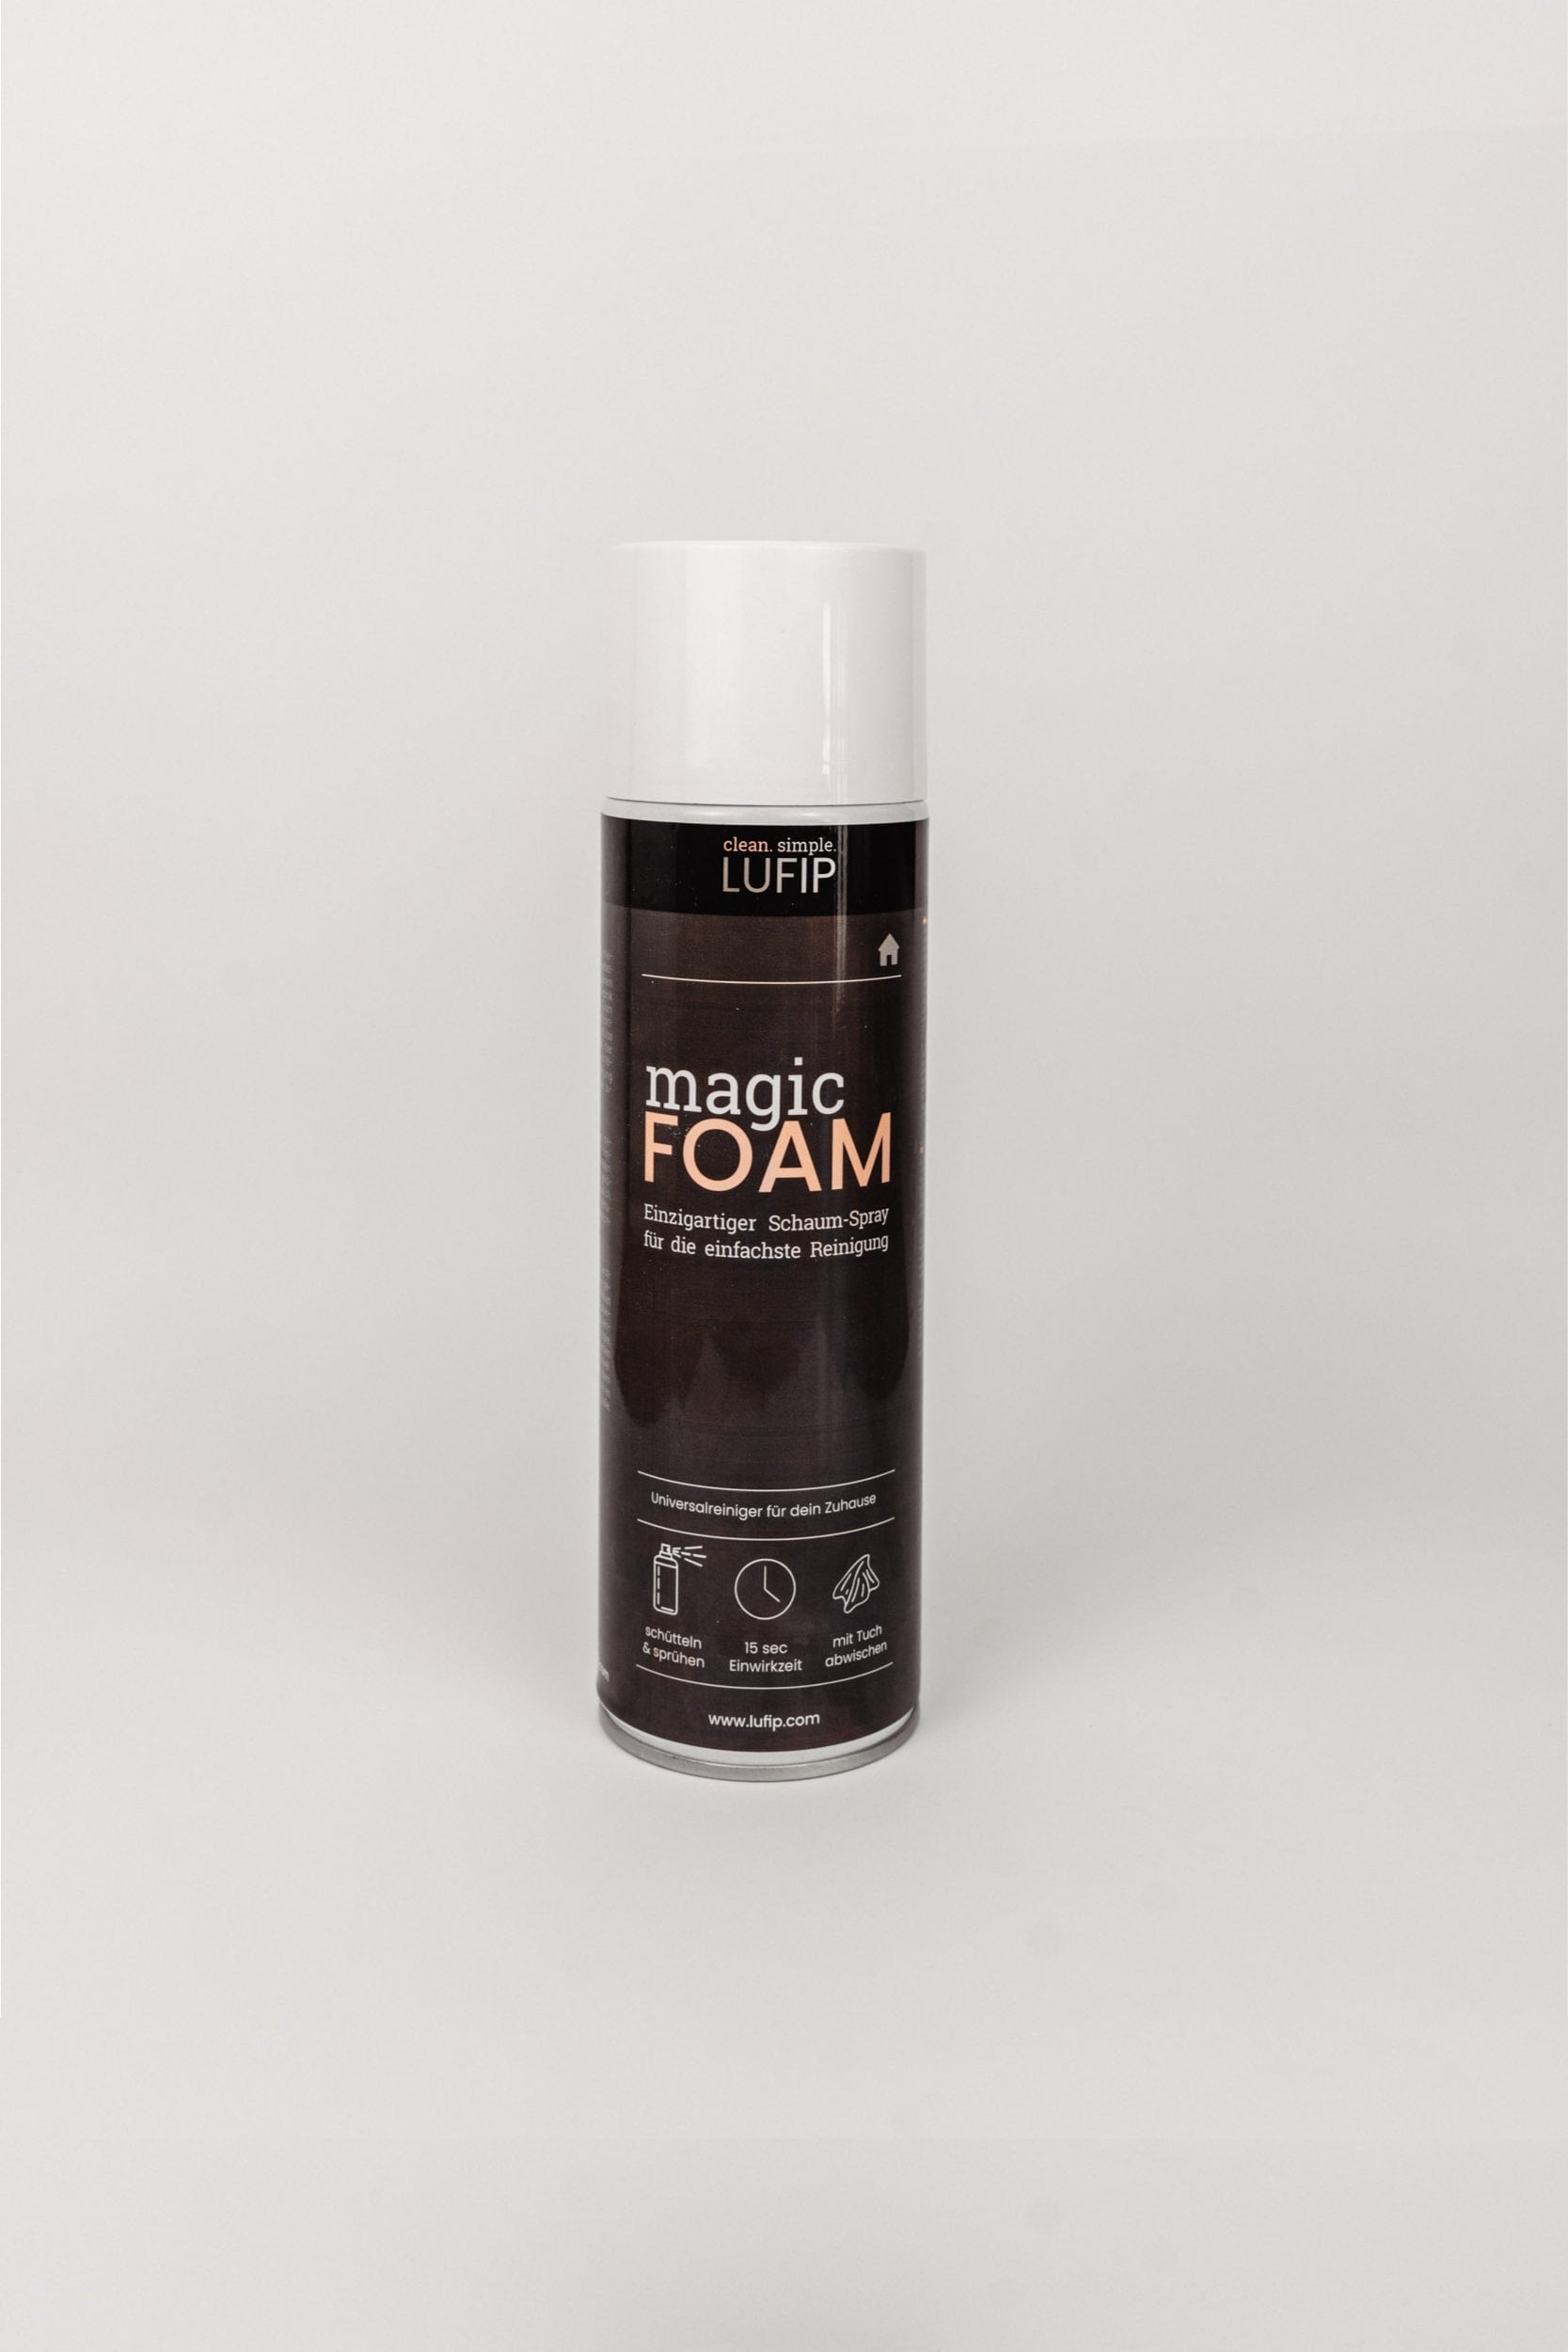 Magic Foam Dose - Vielseitiger Schaumreiniger für schnelle, streifenfreie Reinigung. Nutzbar auf allen Oberflächen. Ersetzt mehrere Reinigungsmittel. Effektiv und sparsam im Verbrauch. Dose vor neutralem weißen Hintergrund